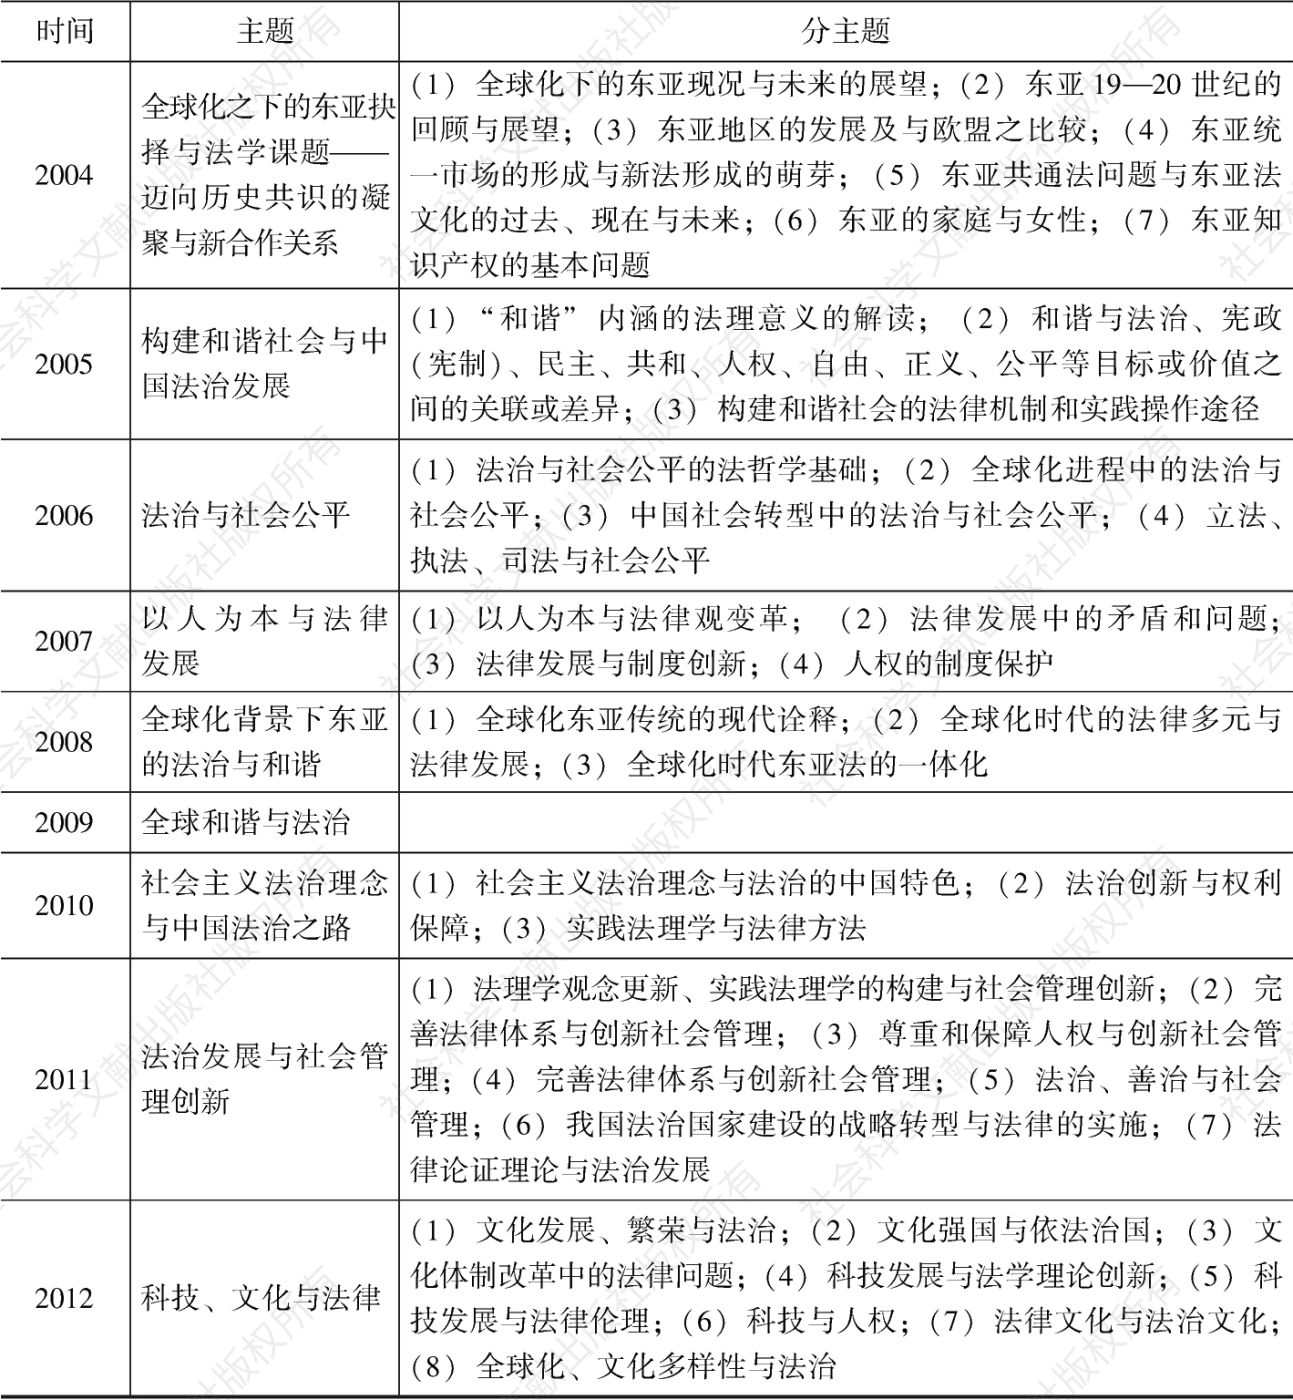 表1 中国法学会法理学研究会1985—2012年年会主题一览-续表2